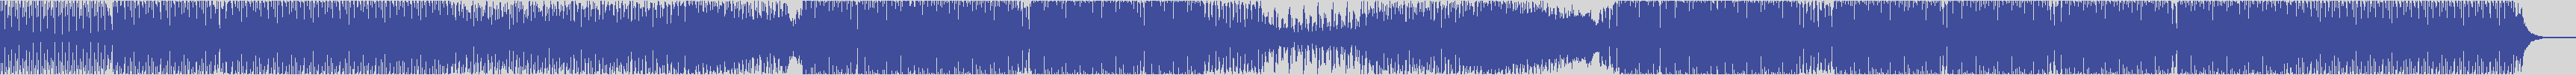 smilax_productions [SPMOL226] Karmat - Ran Kan Kan [Original Mix] audio wave form